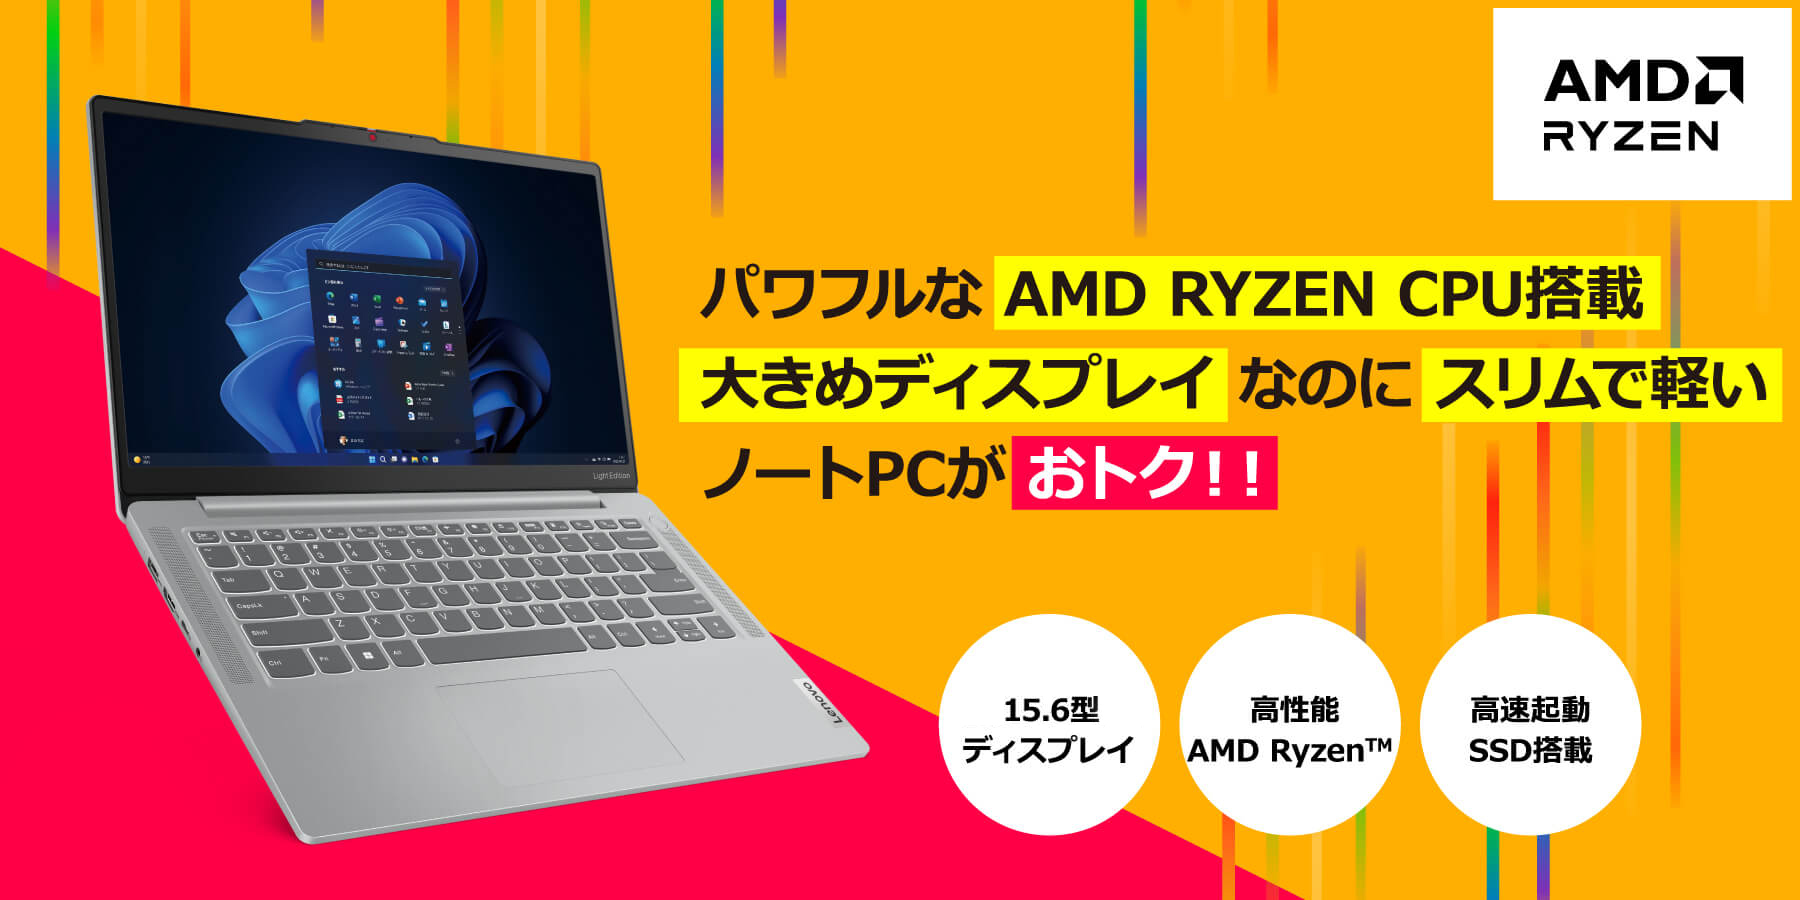 pt AMD RYZEN CPUڑ傫߃fBXvCȂ̂ɃXŌym[gPCgNII 15.6^fBXvC \AMD Ryzen NSSD